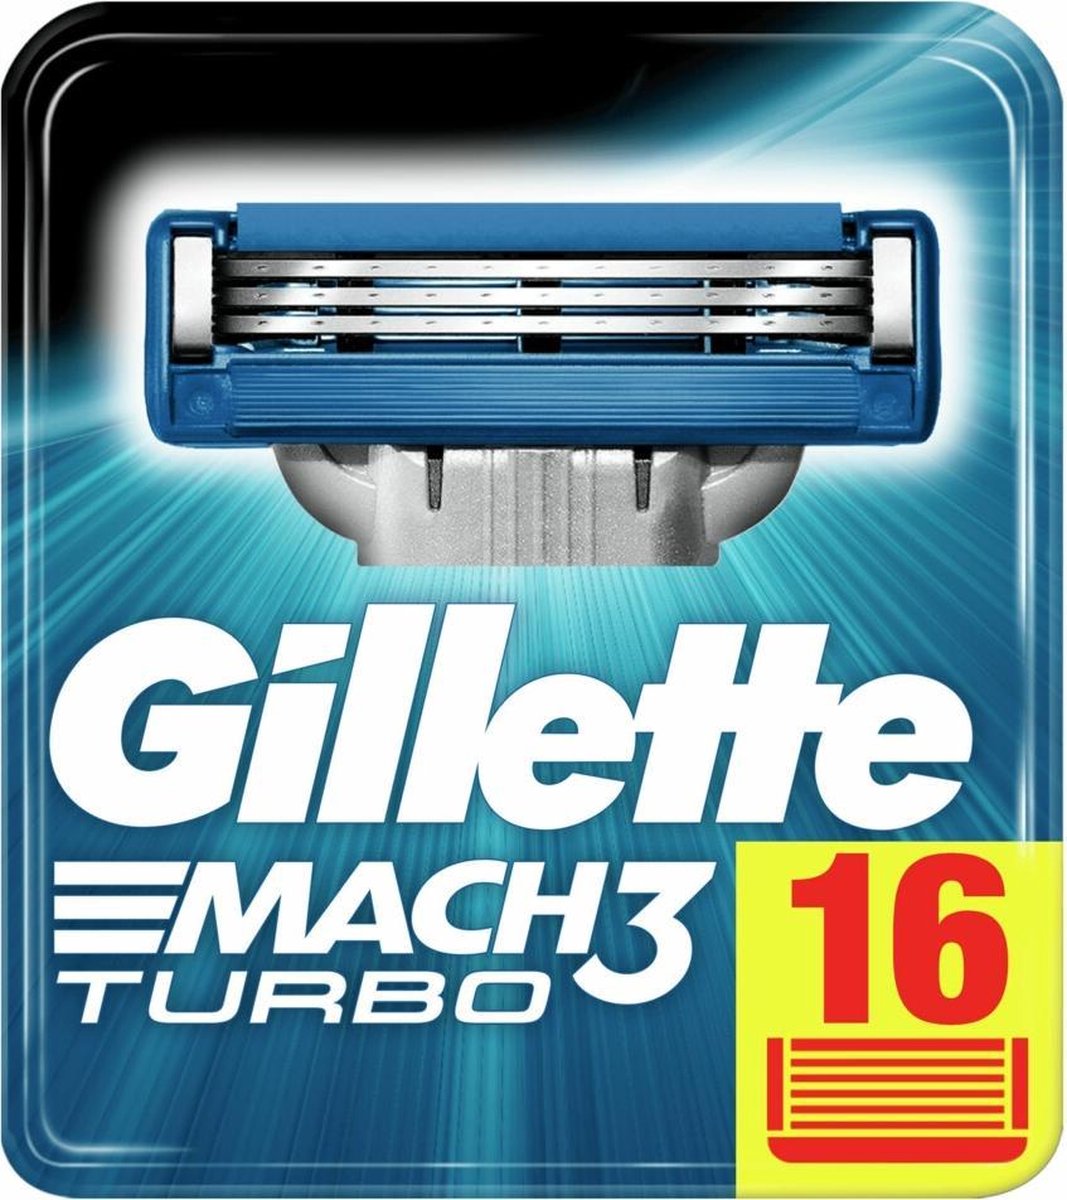 Gillette Turbo Scheermesjes Mannen - 16 stuks | bol.com